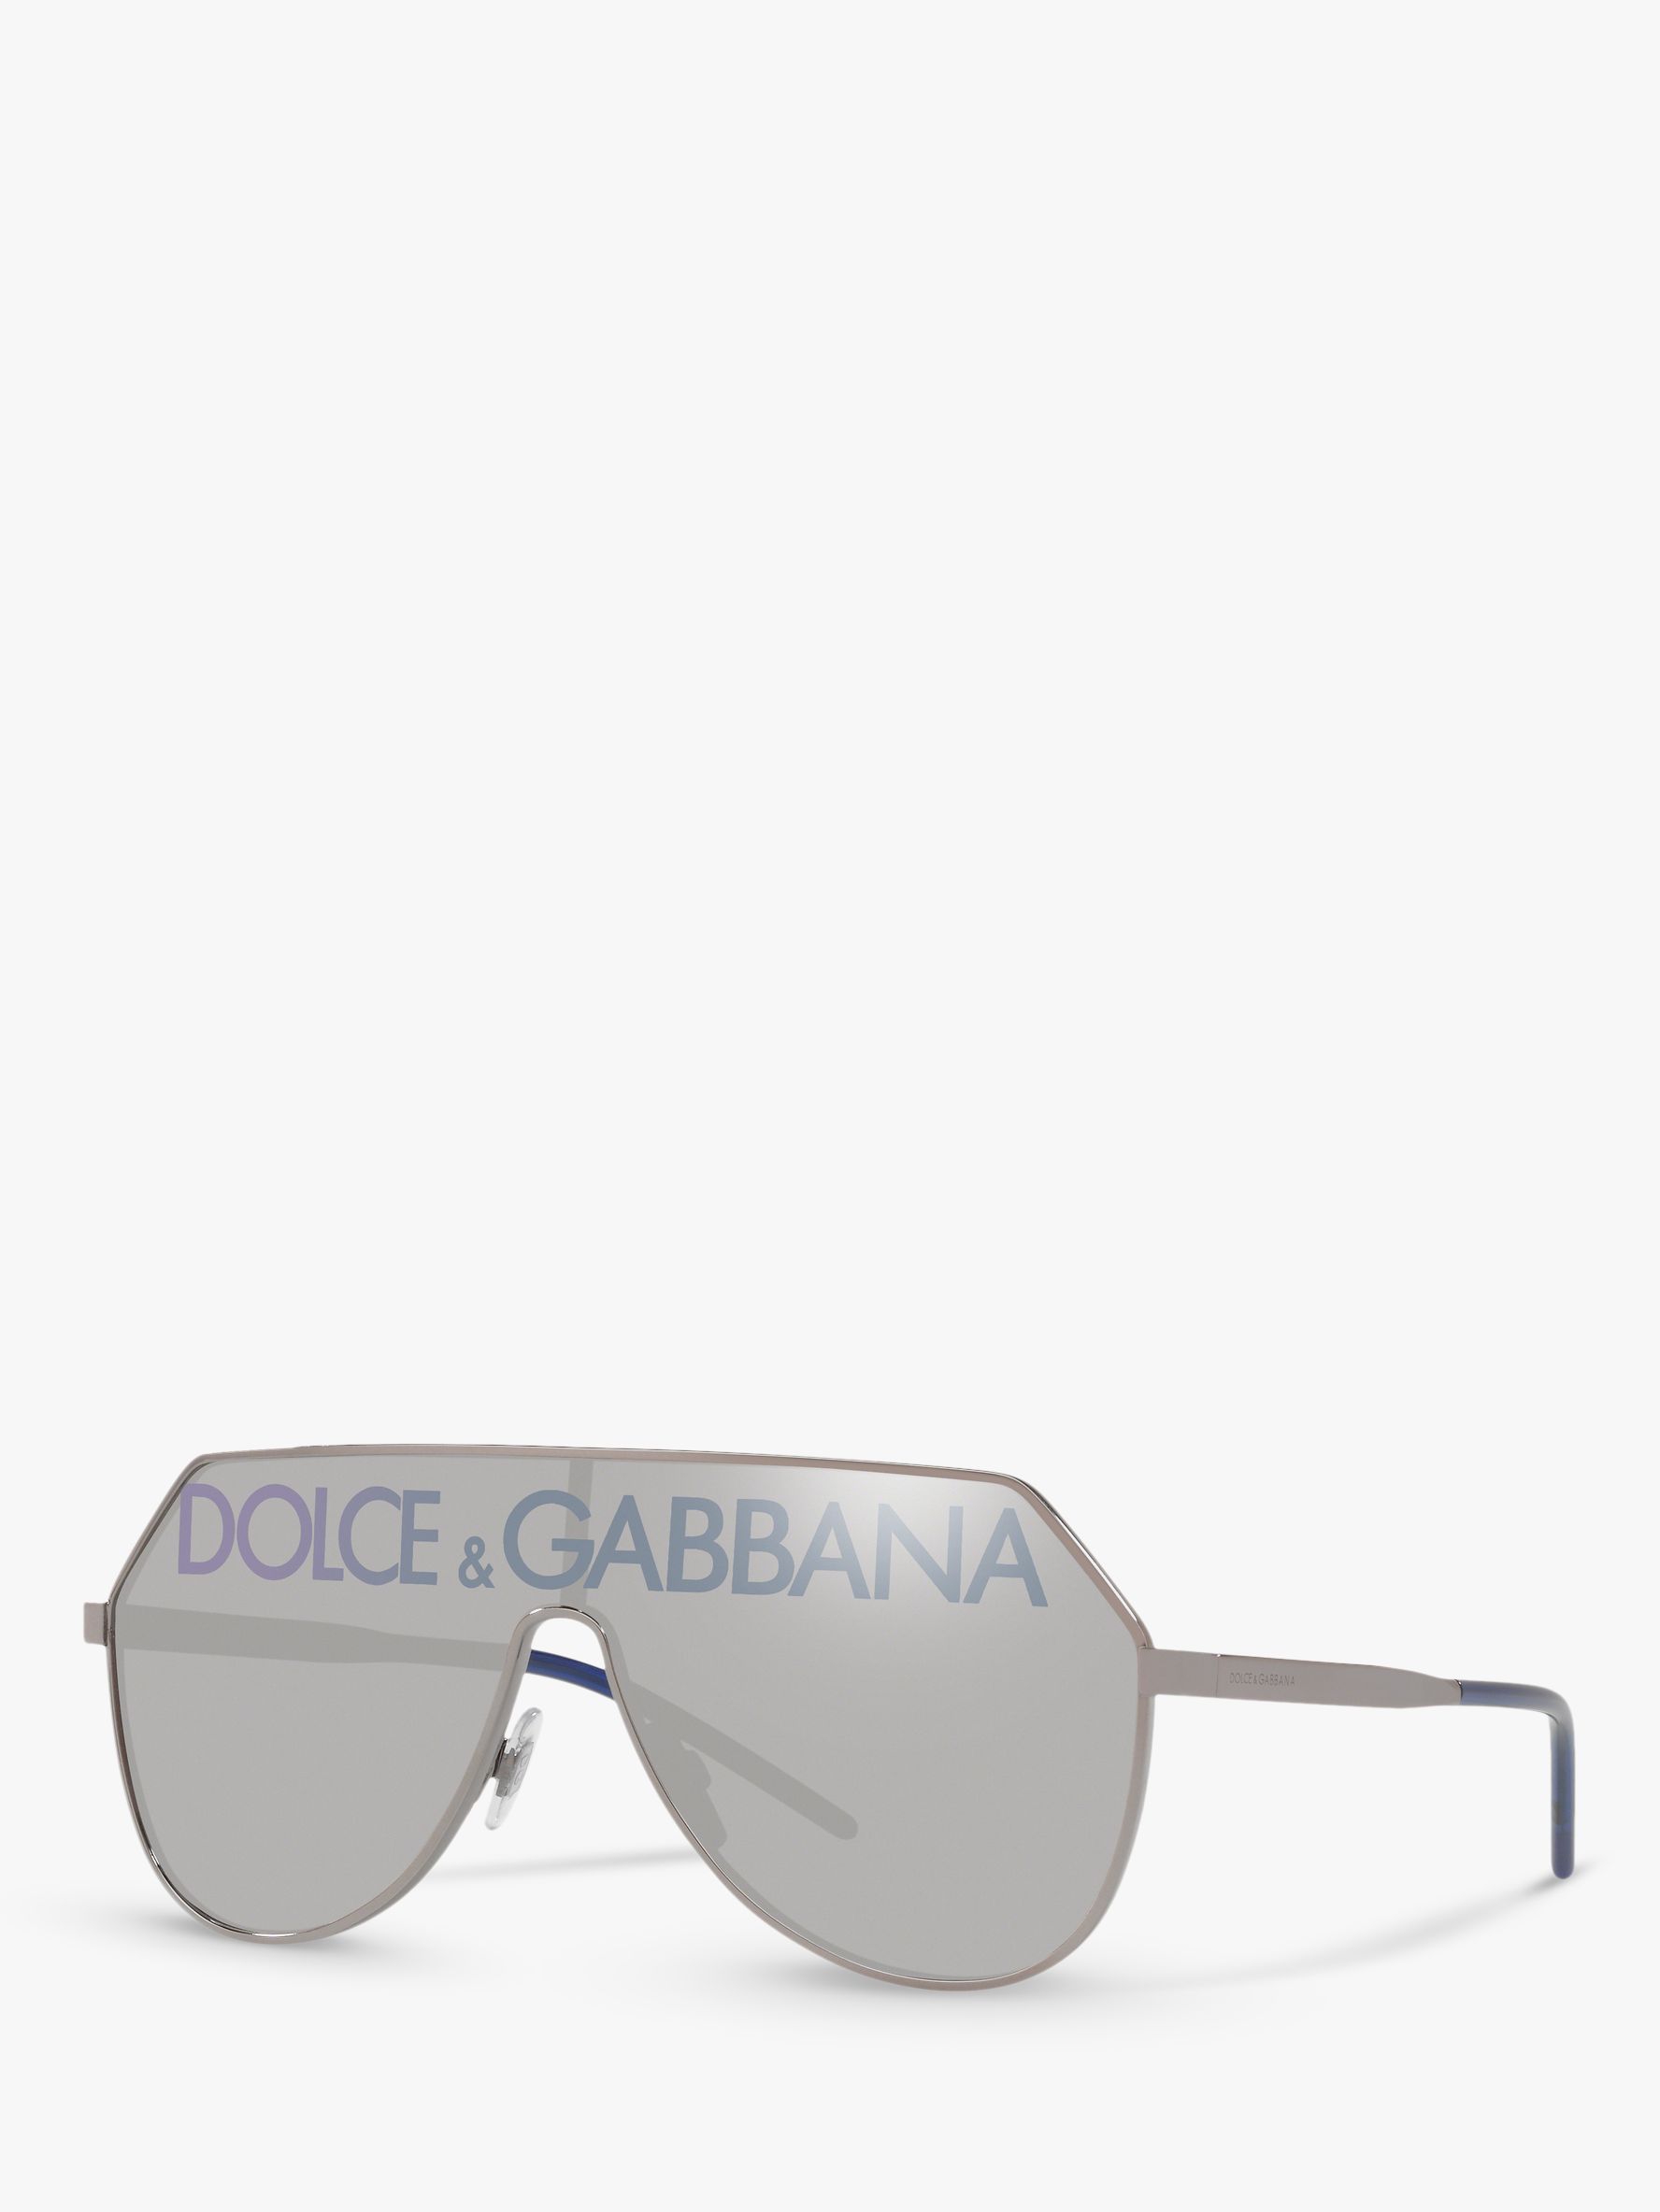 dolce & gabbana sunglasses